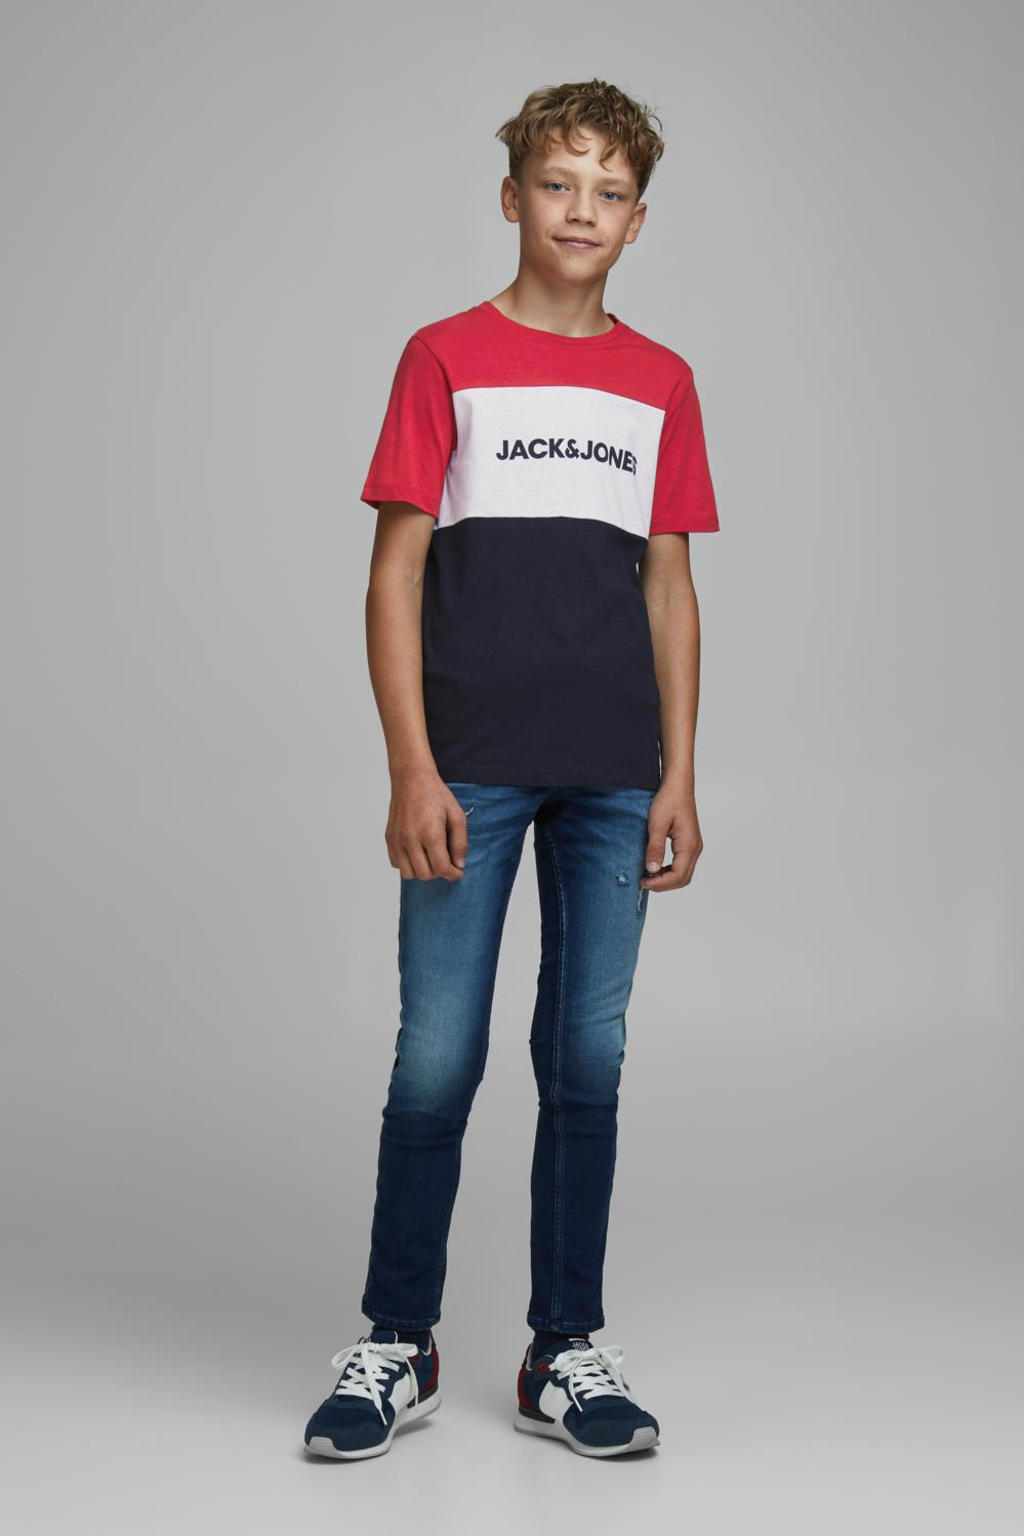 Rood, wit en donkerblauwe jongens JACK & JONES JUNIOR T-shirt van katoen met logo dessin, korte mouwen en ronde hals